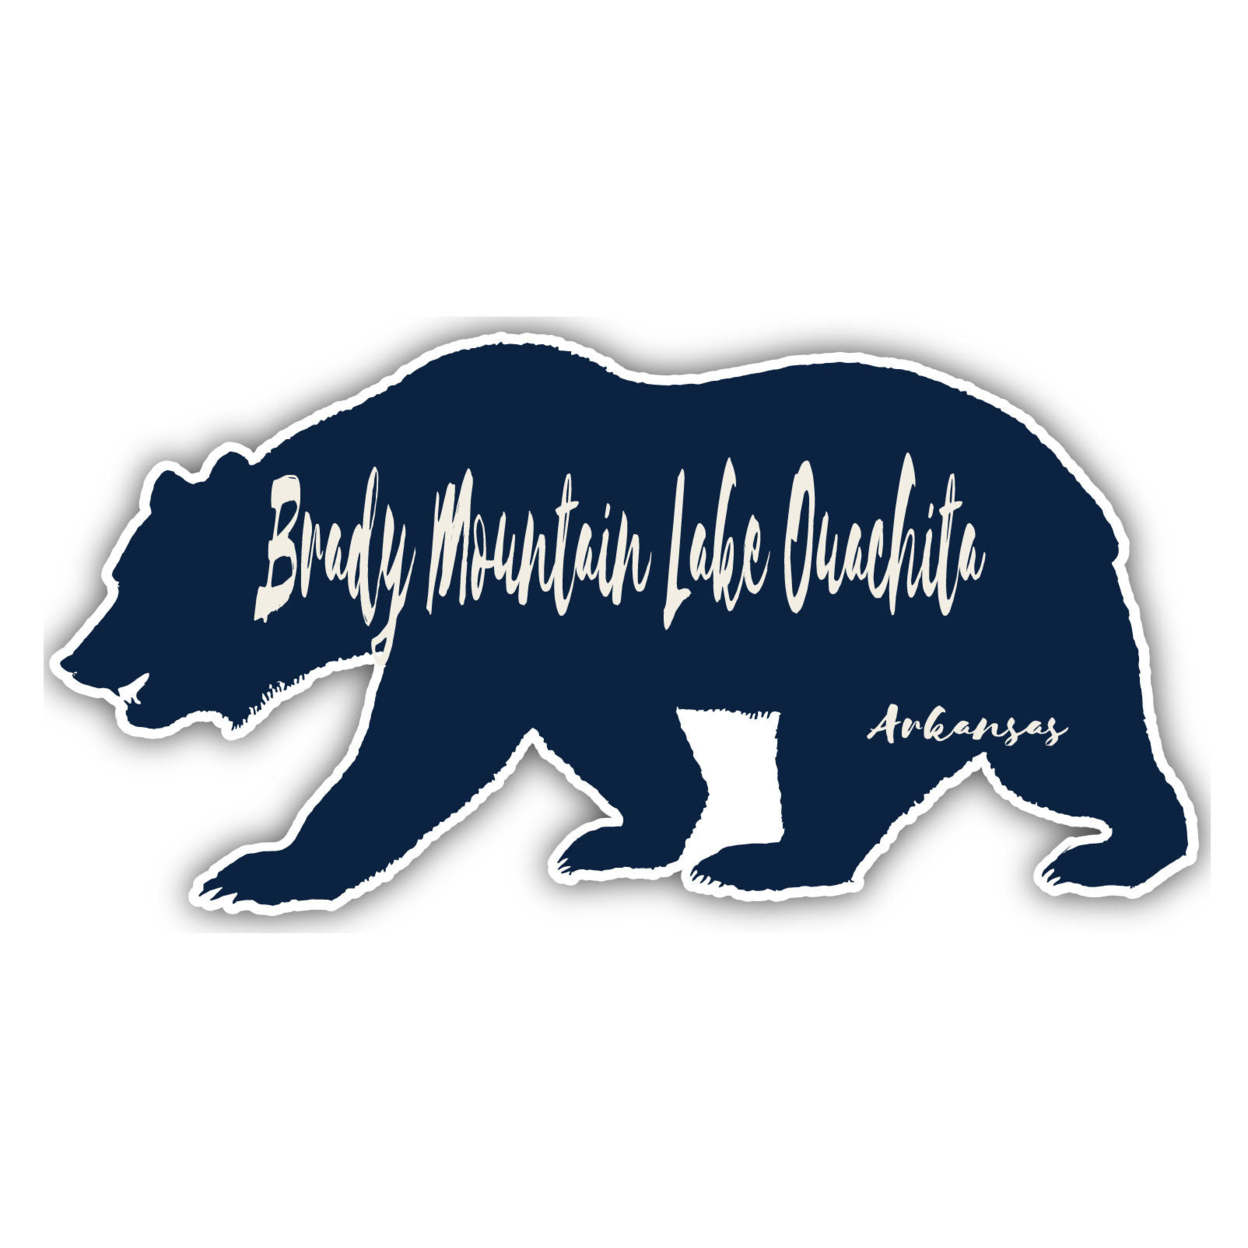 Brady Mountain Lake Ouachita Arkansas Souvenir Decorative Stickers (Choose Theme And Size) - Single Unit, 12-Inch, Bear